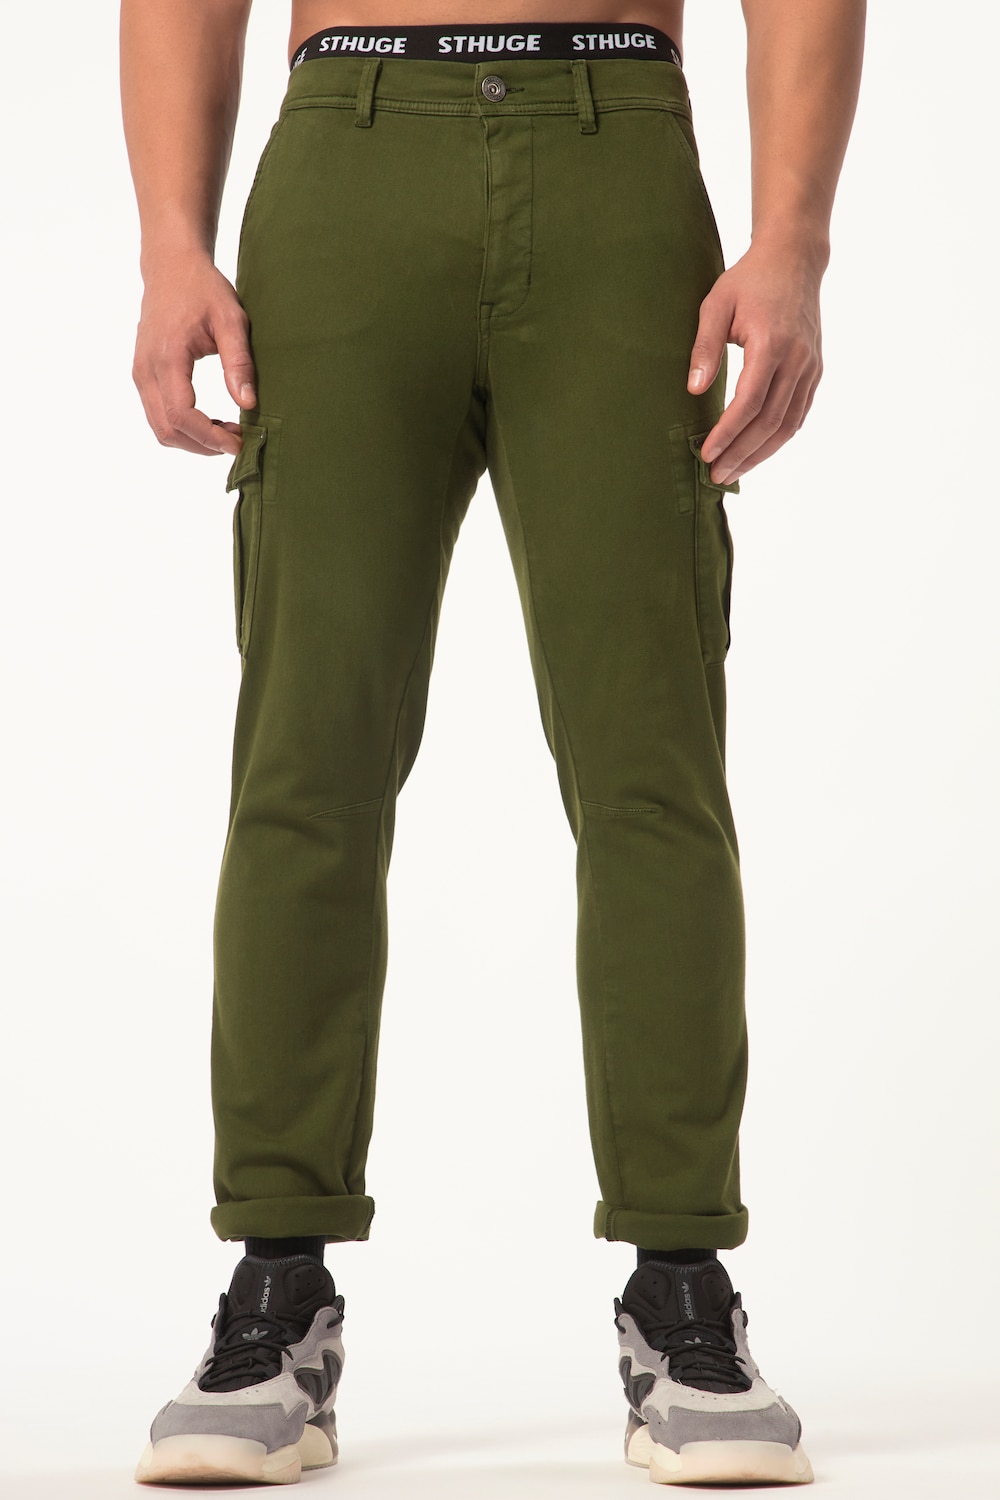 grandes tailles pantalon cargo sthuge flexlastic®, femmes, vert, taille: 54, coton, sthuge